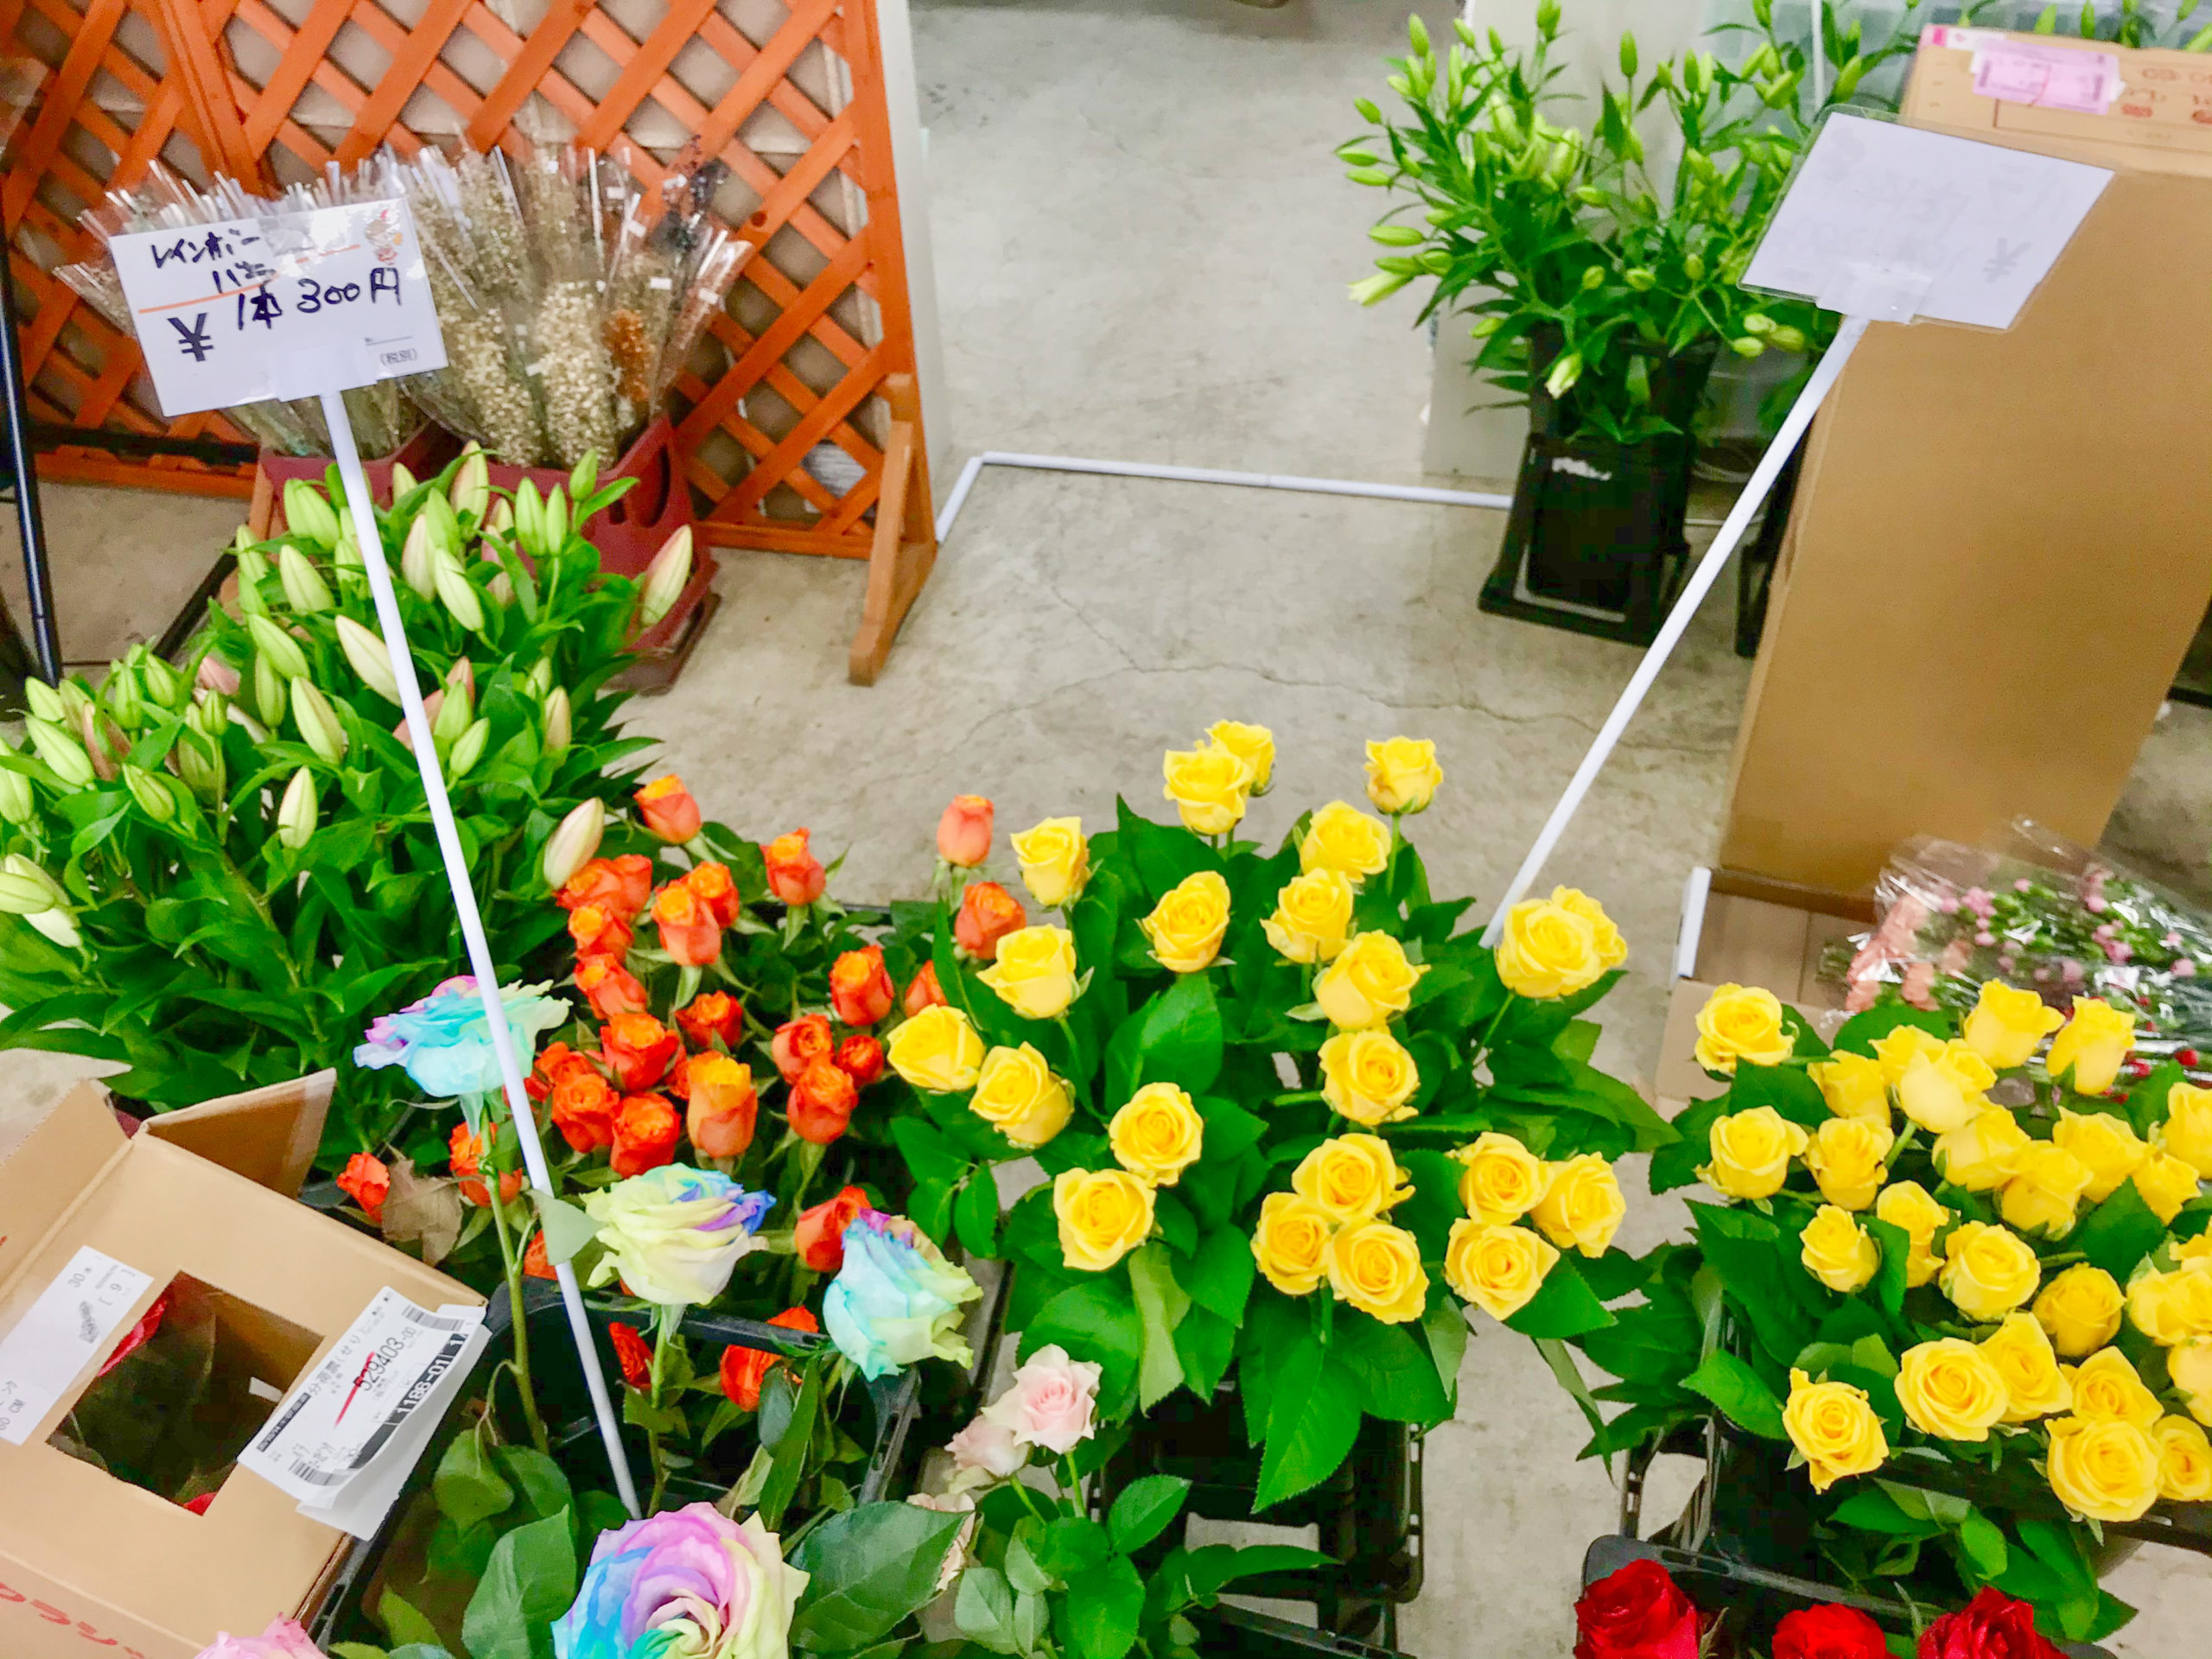 埼玉県でドライフラワー買うなら 大宮フラワーセンター が激安でおすすめ 生花も安い